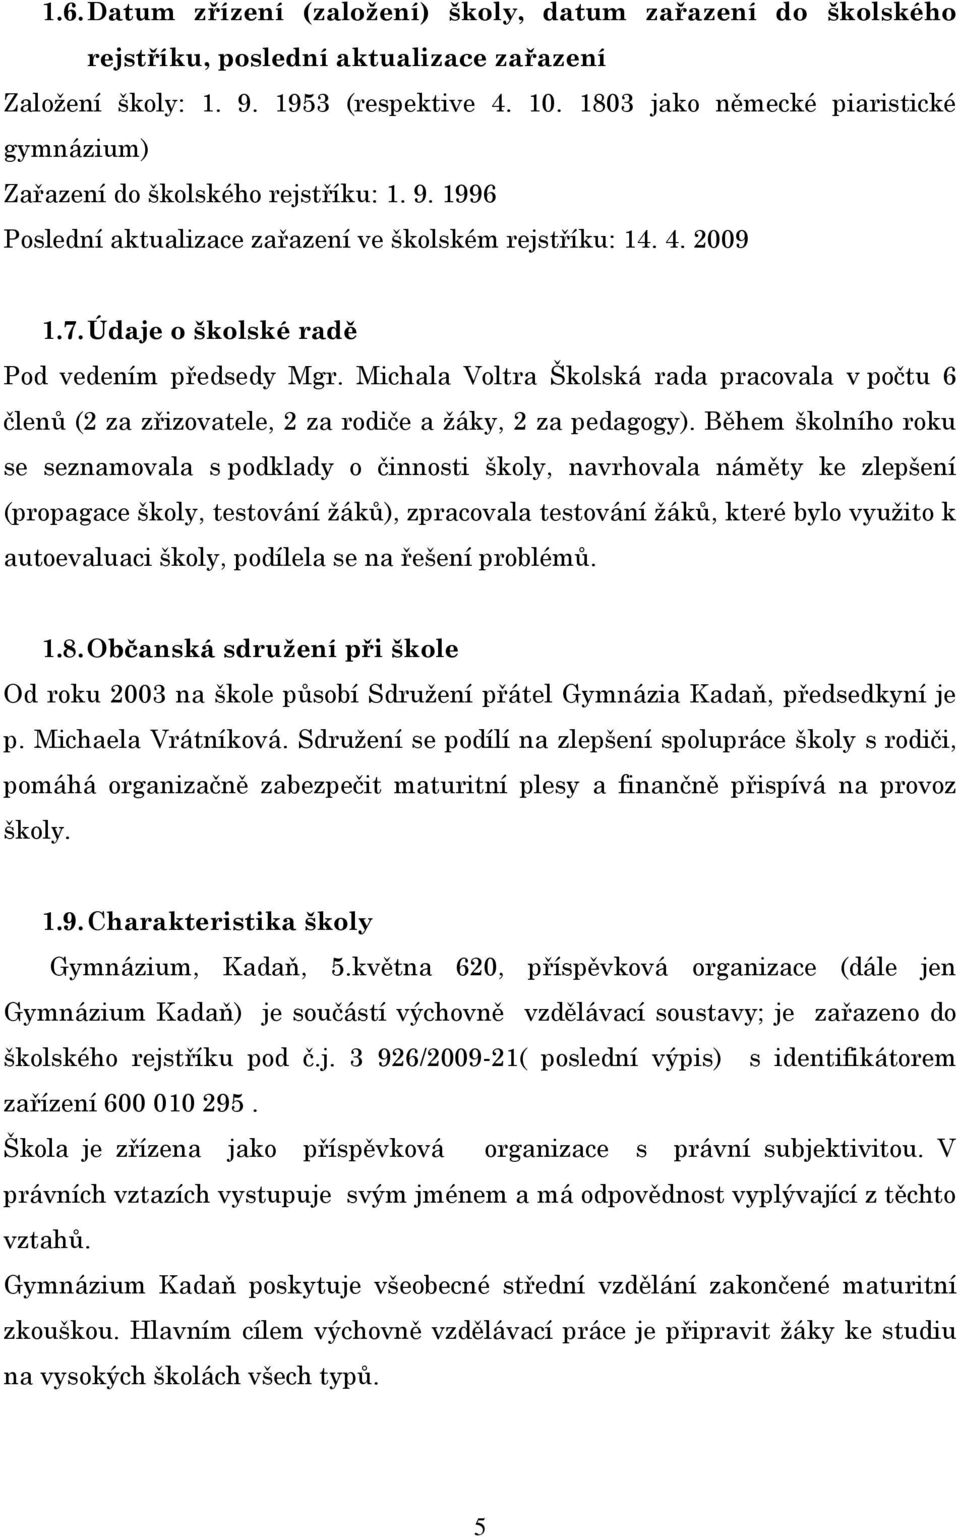 Údaje o školské radě Pod vedením předsedy Mgr. Michala Voltra Školská rada pracovala v počtu 6 členů (2 za zřizovatele, 2 za rodiče a ţáky, 2 za pedagogy).